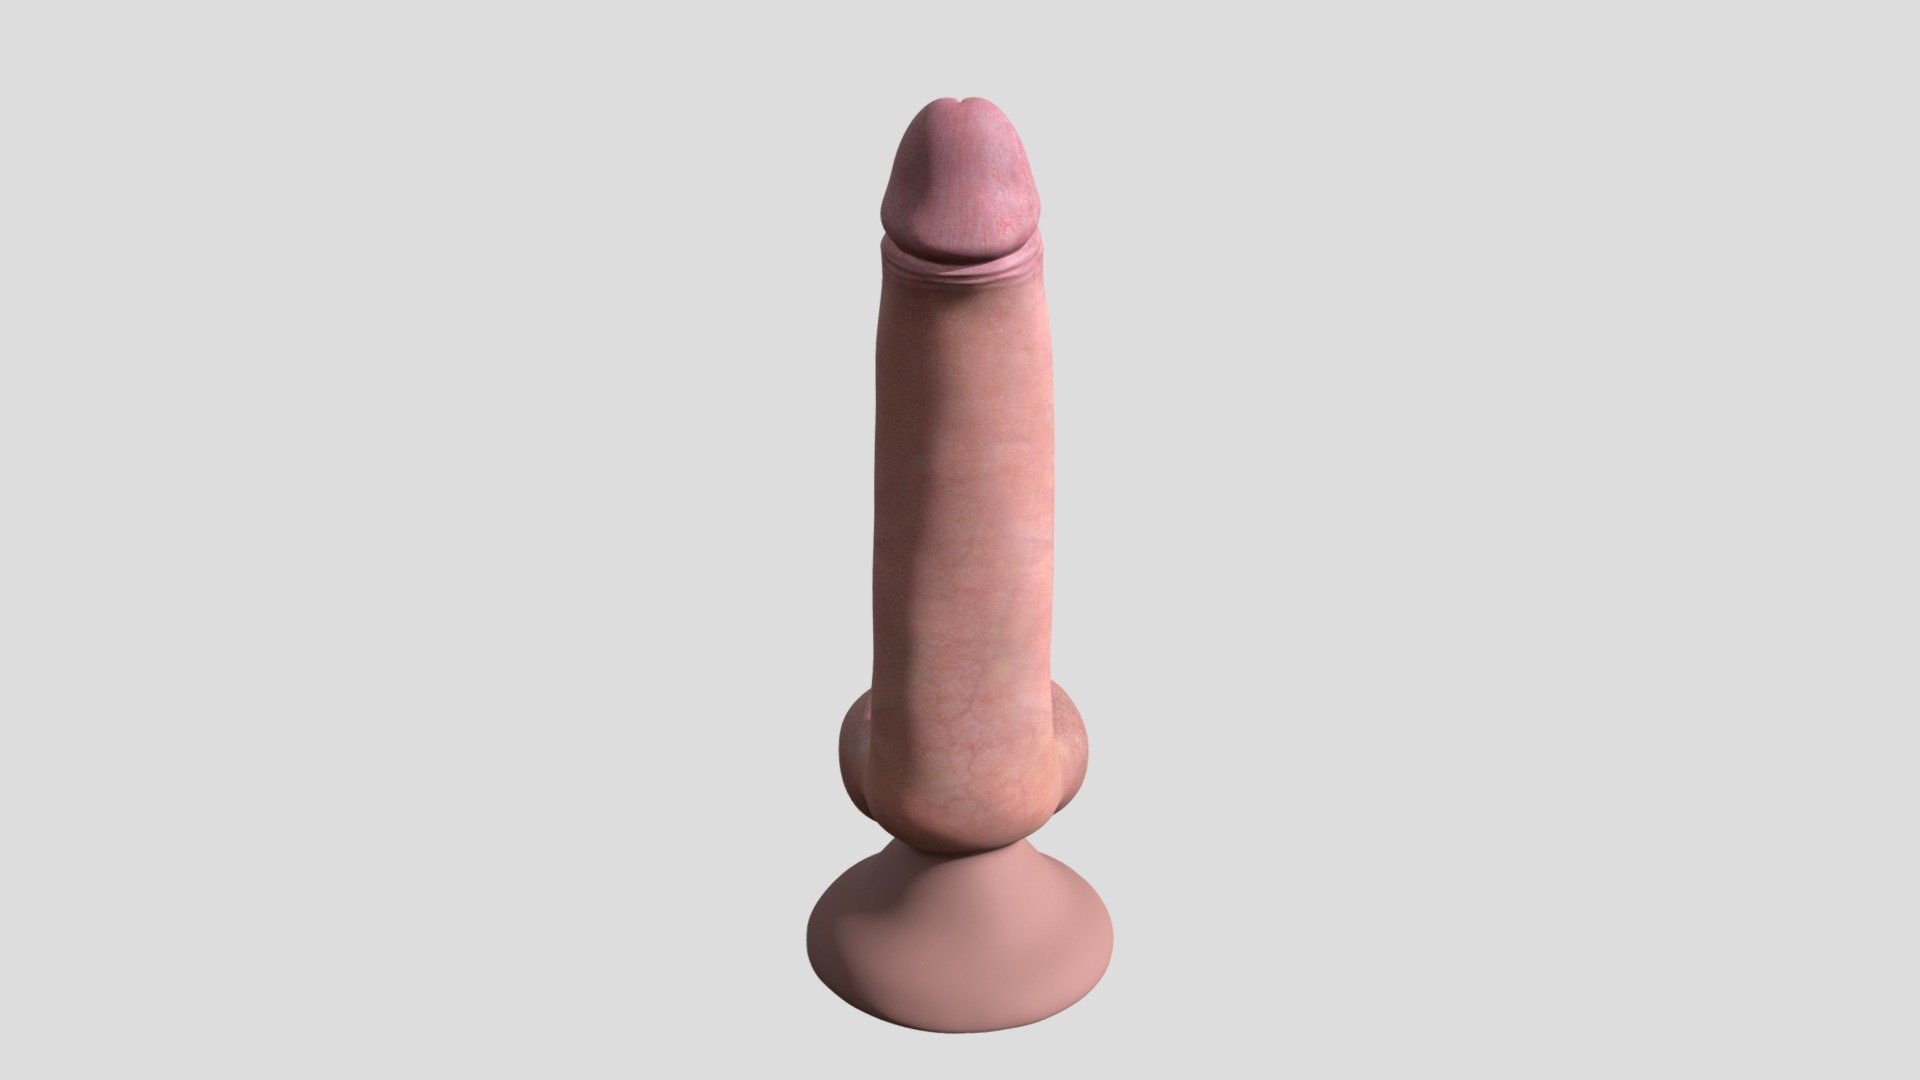 Created: humanxtextures - Hx Penis - 3D model by humanxtextures 3d model